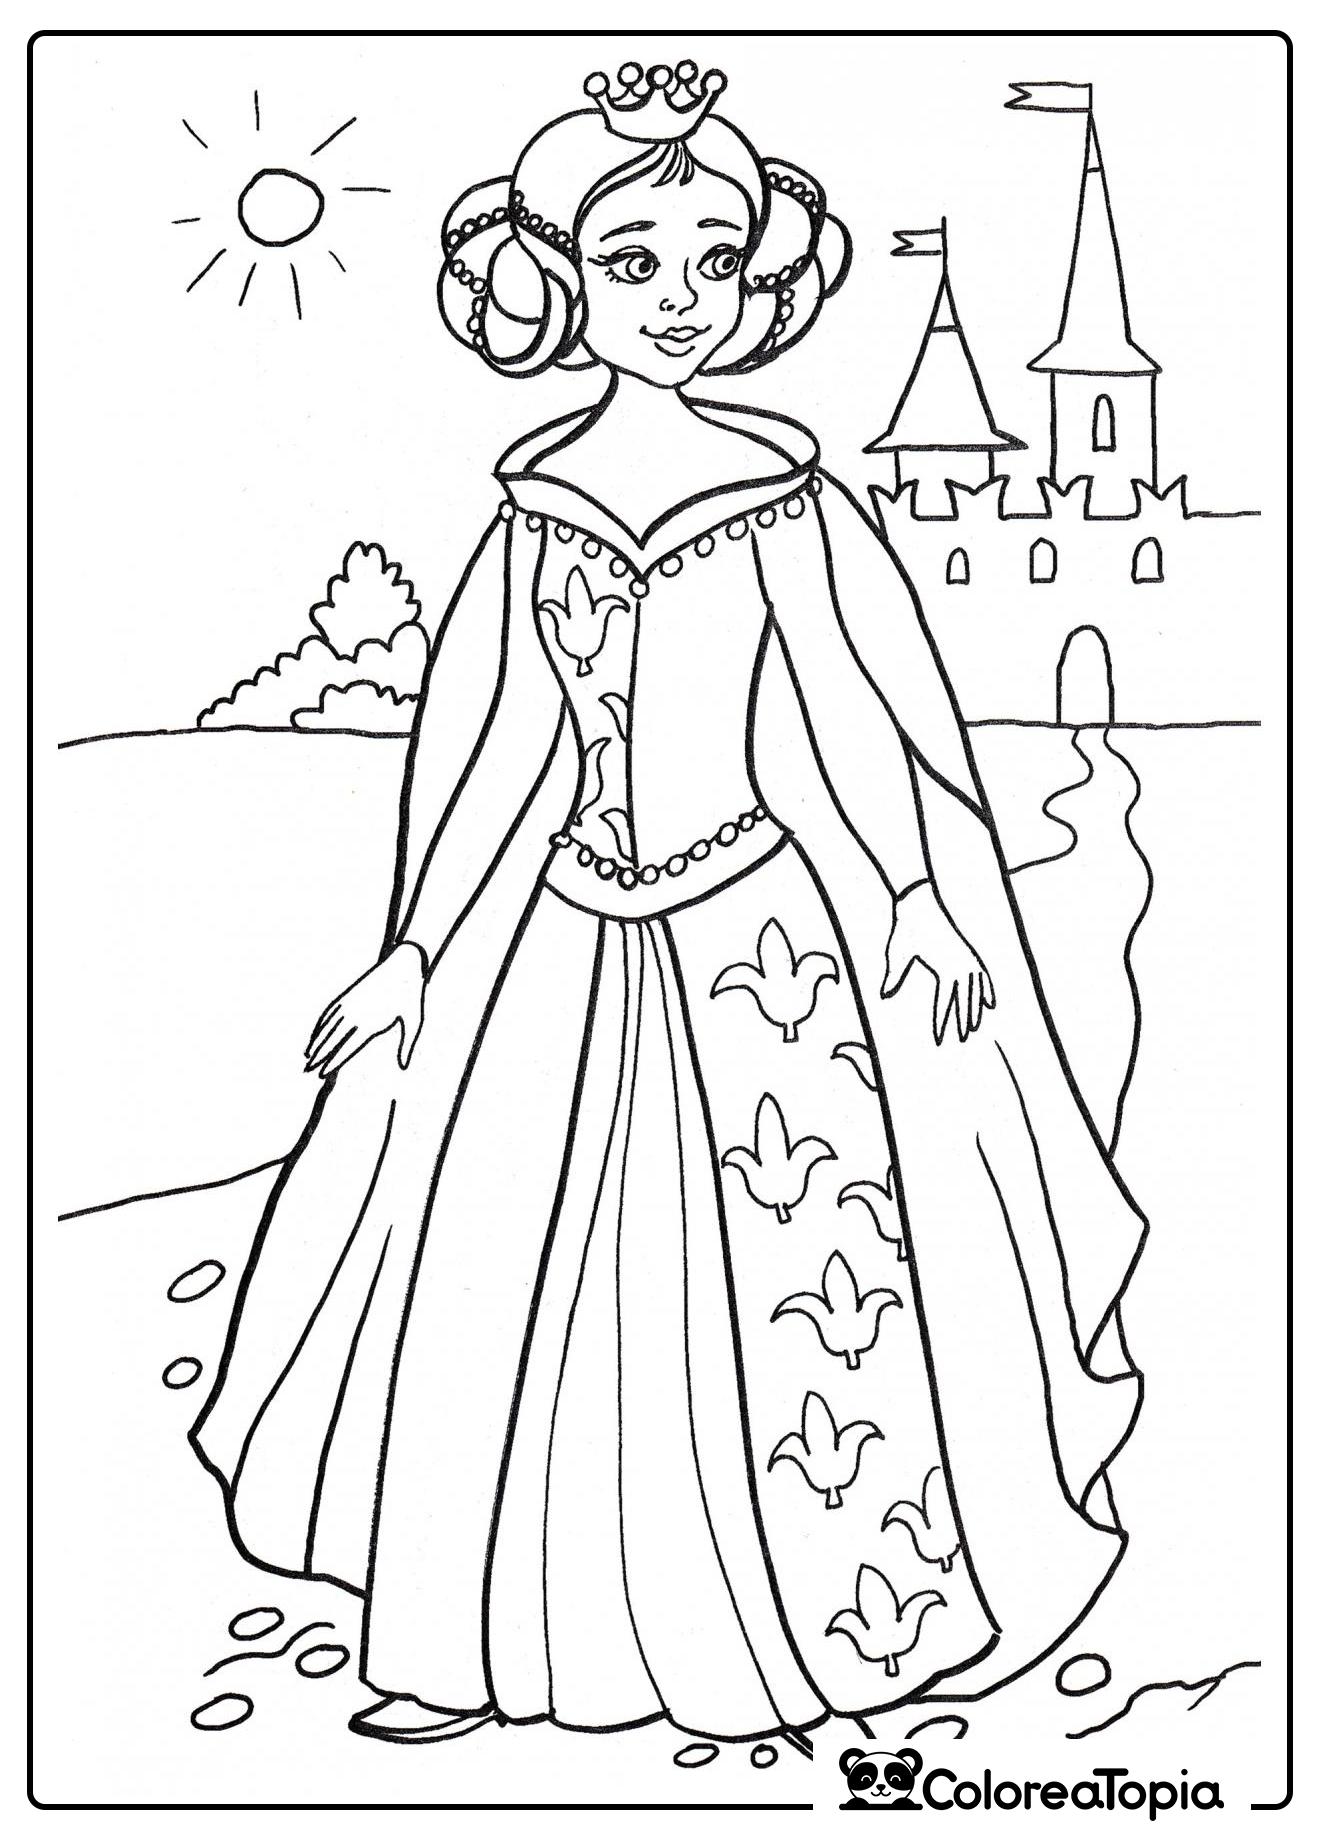 Princesa en el castillo - dibujo para colorear